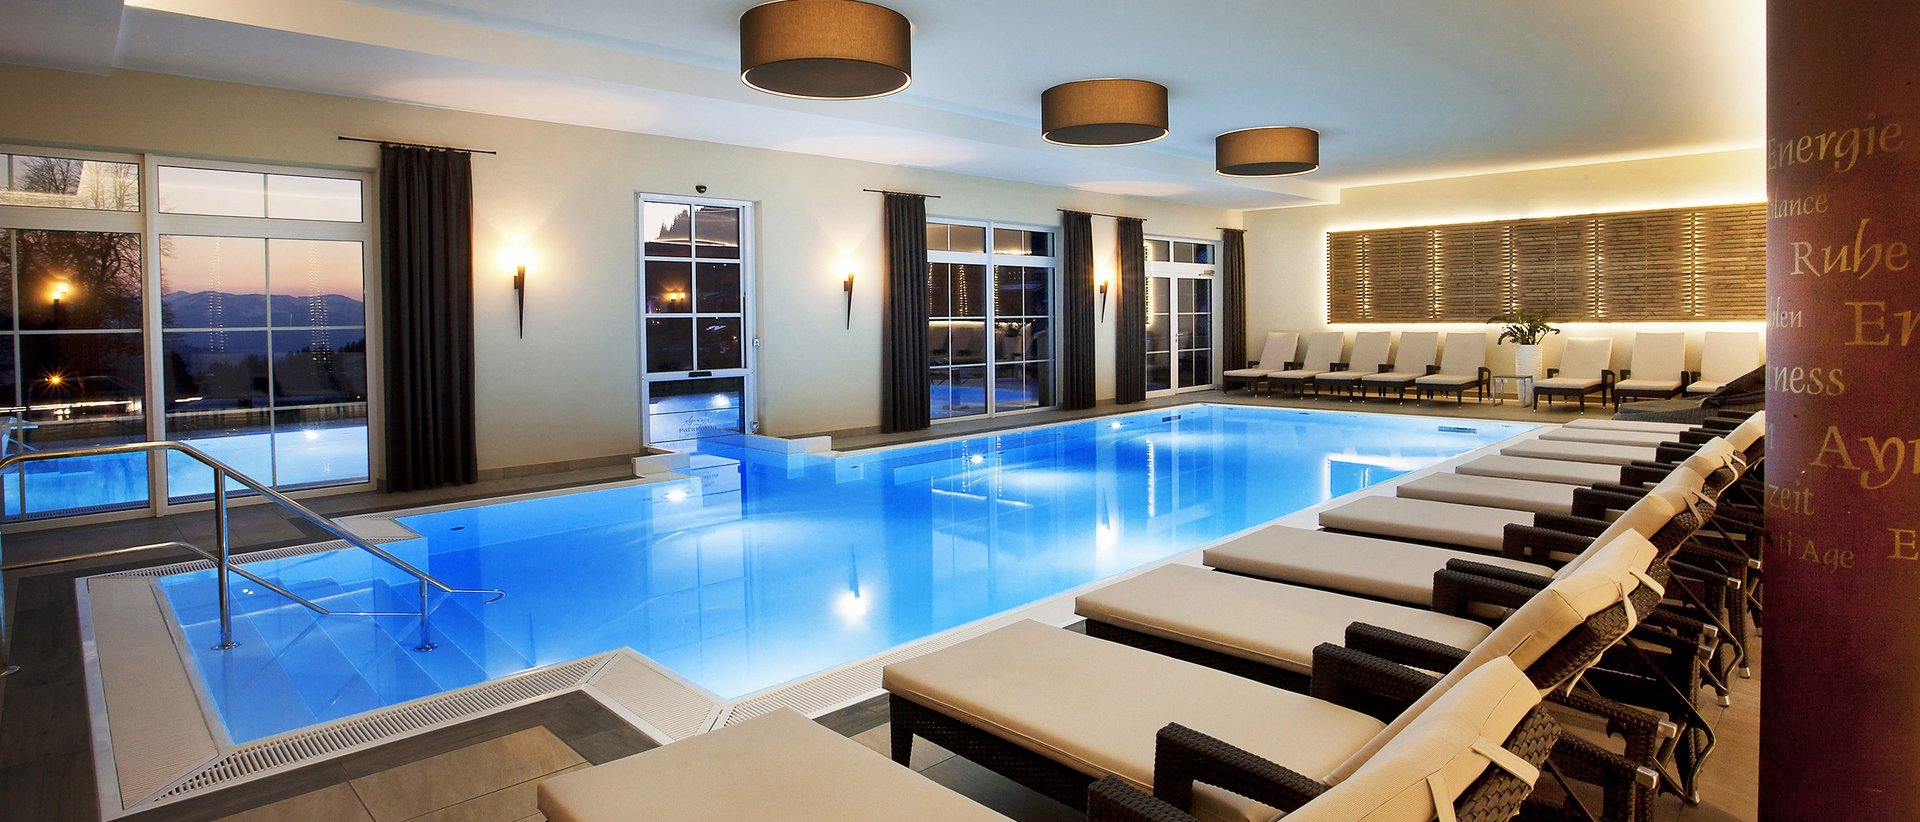 Edles 4-Sterne-S-Hotel im Allgäu mit Schwimmbad